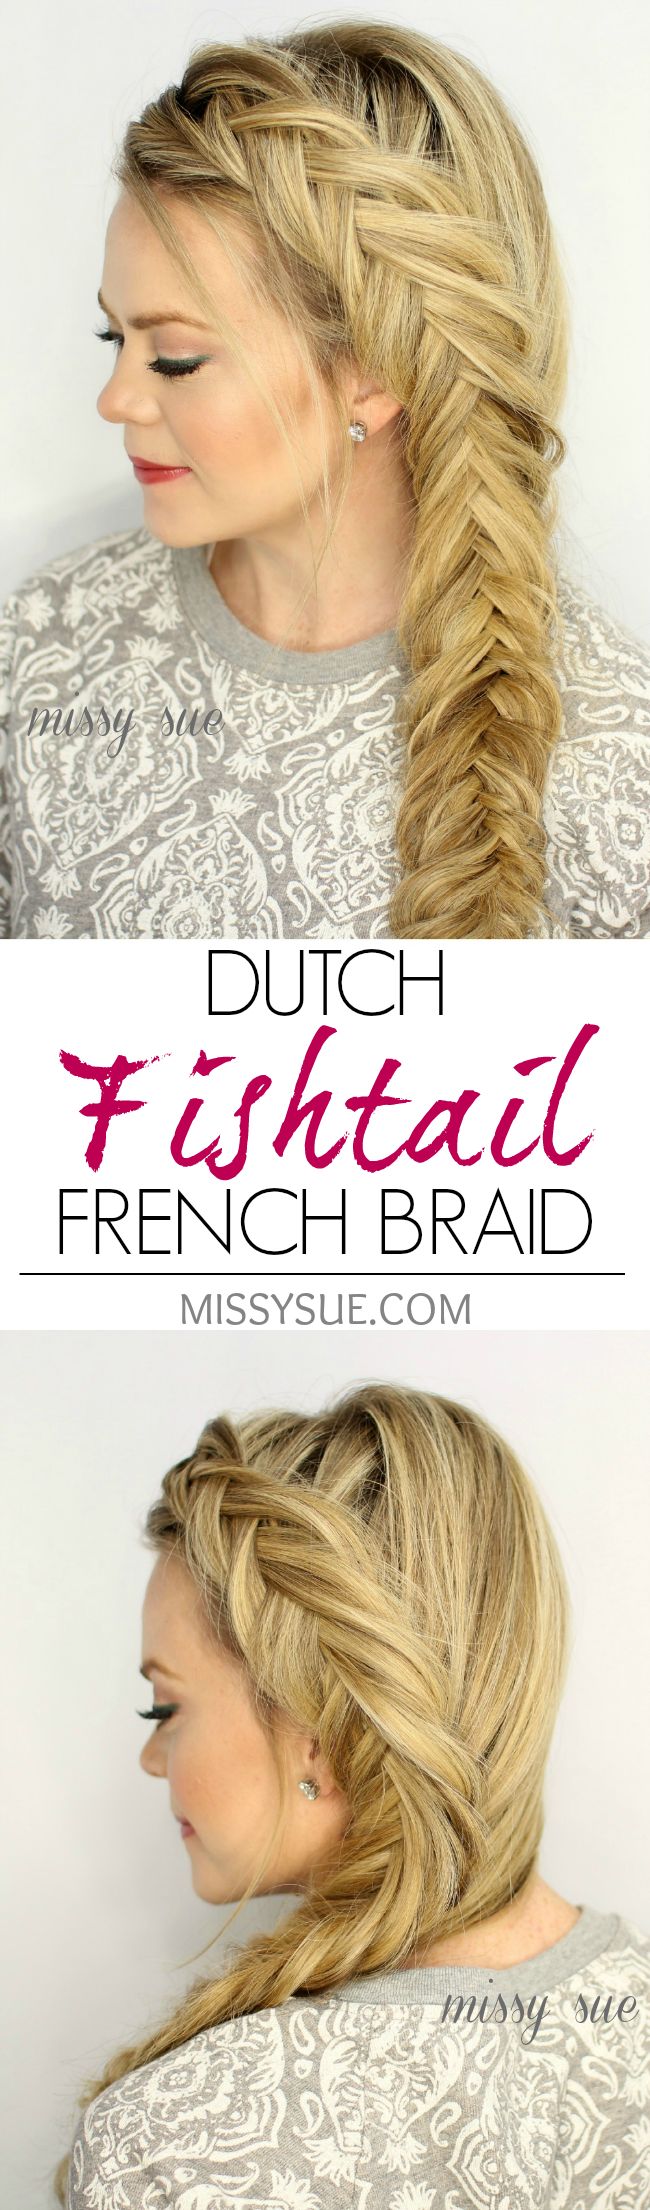 Dutch Fishtail French Braid for Long Hair